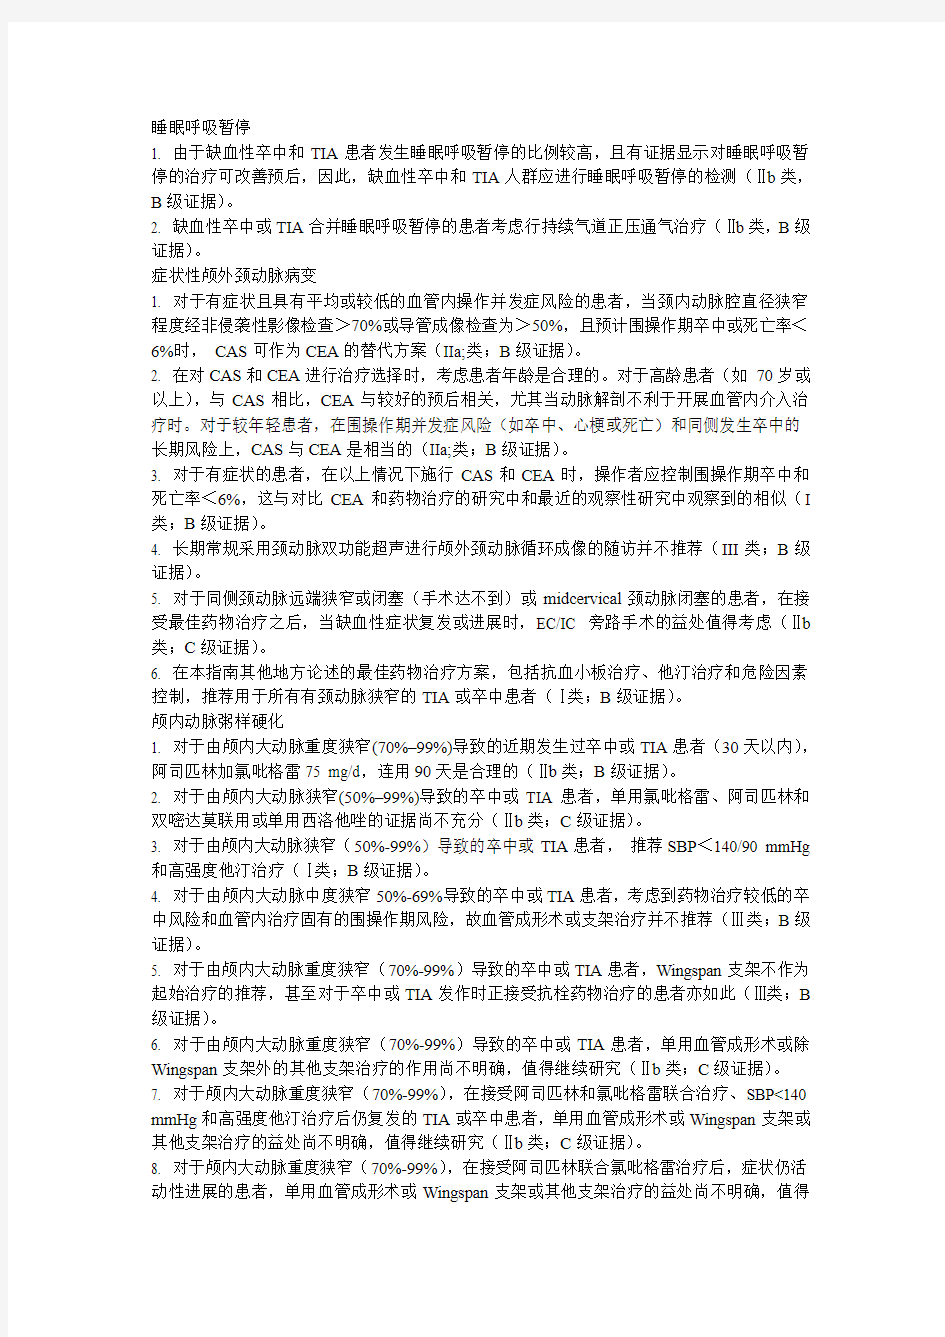 2014年AHAASA卒中和TIA二级预防指南中文版(完整版)